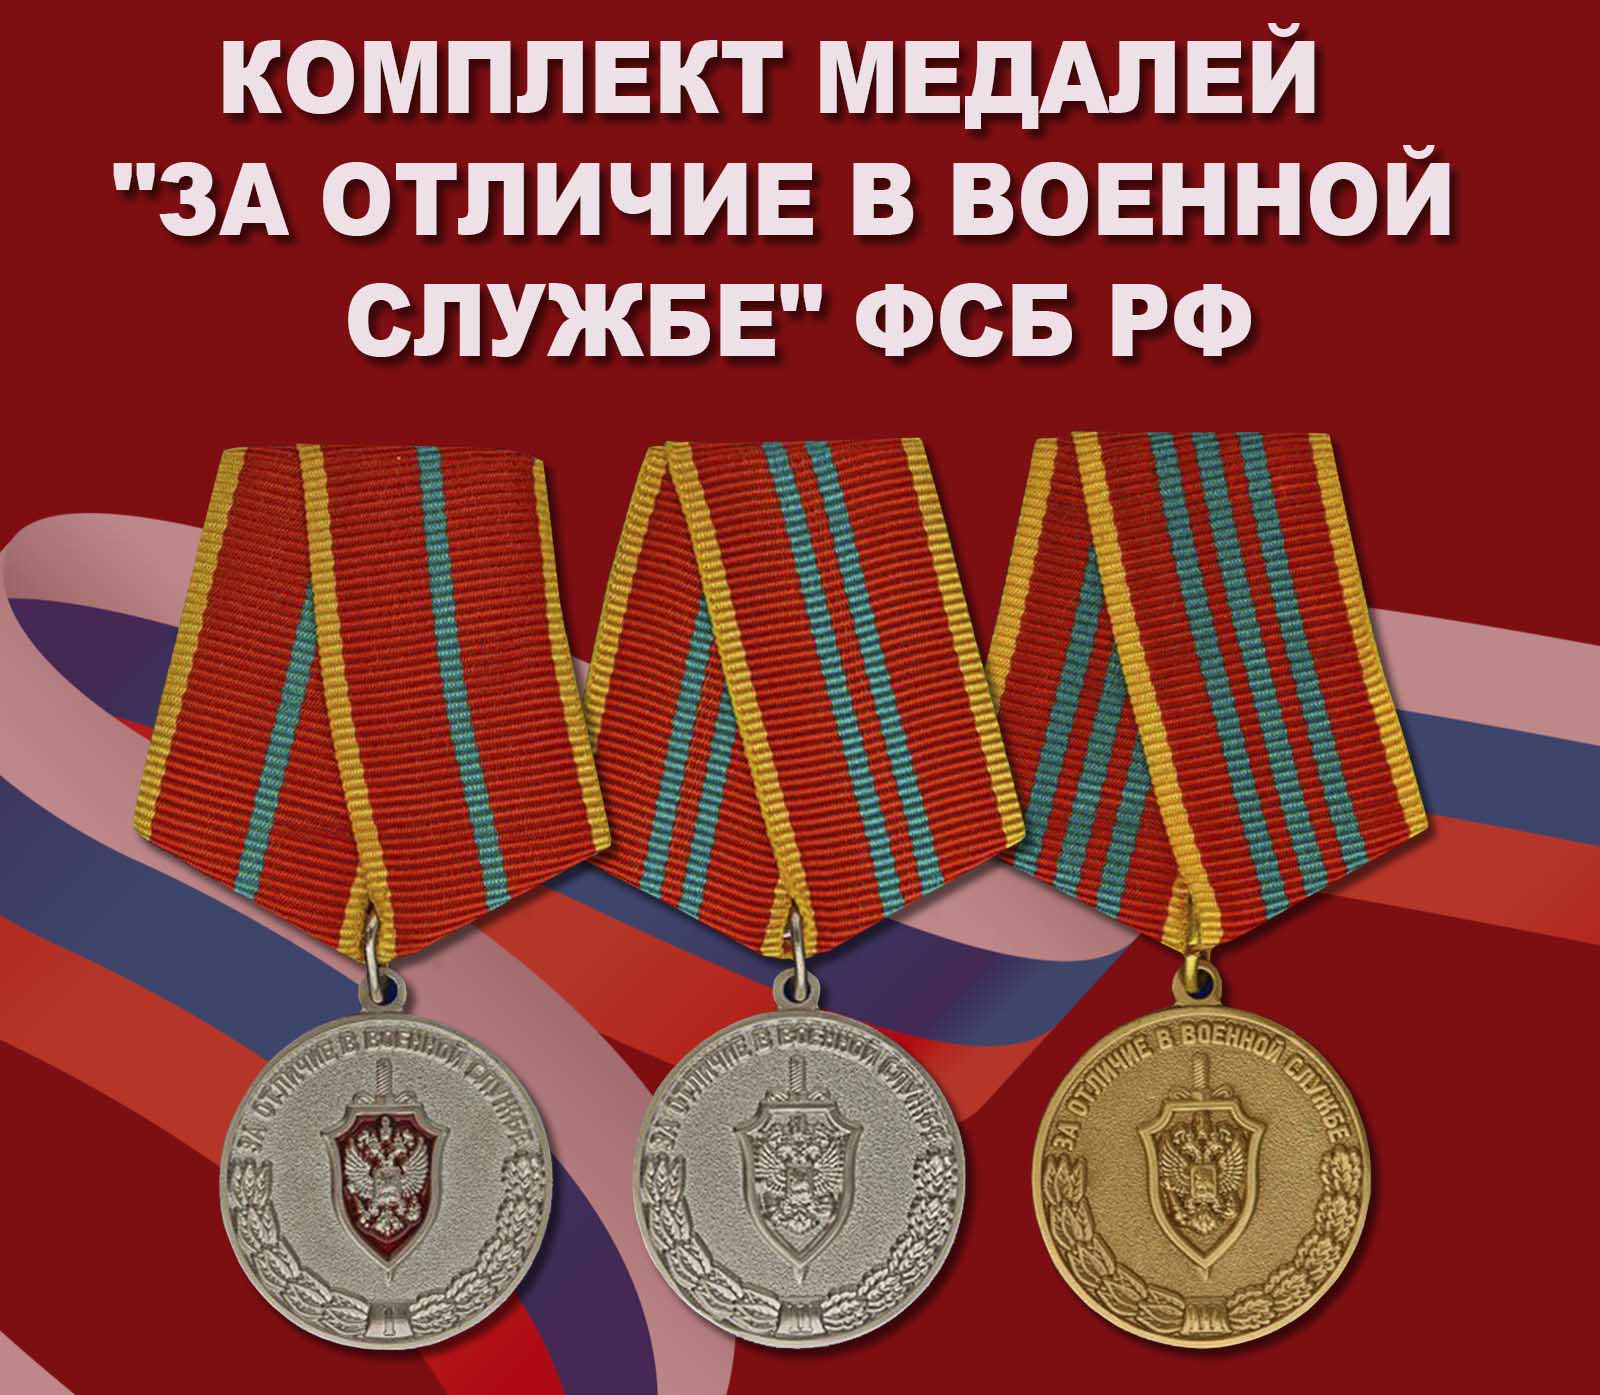 Купить полный комплект медалей "За отличие в военной службе" ФСБ РФ